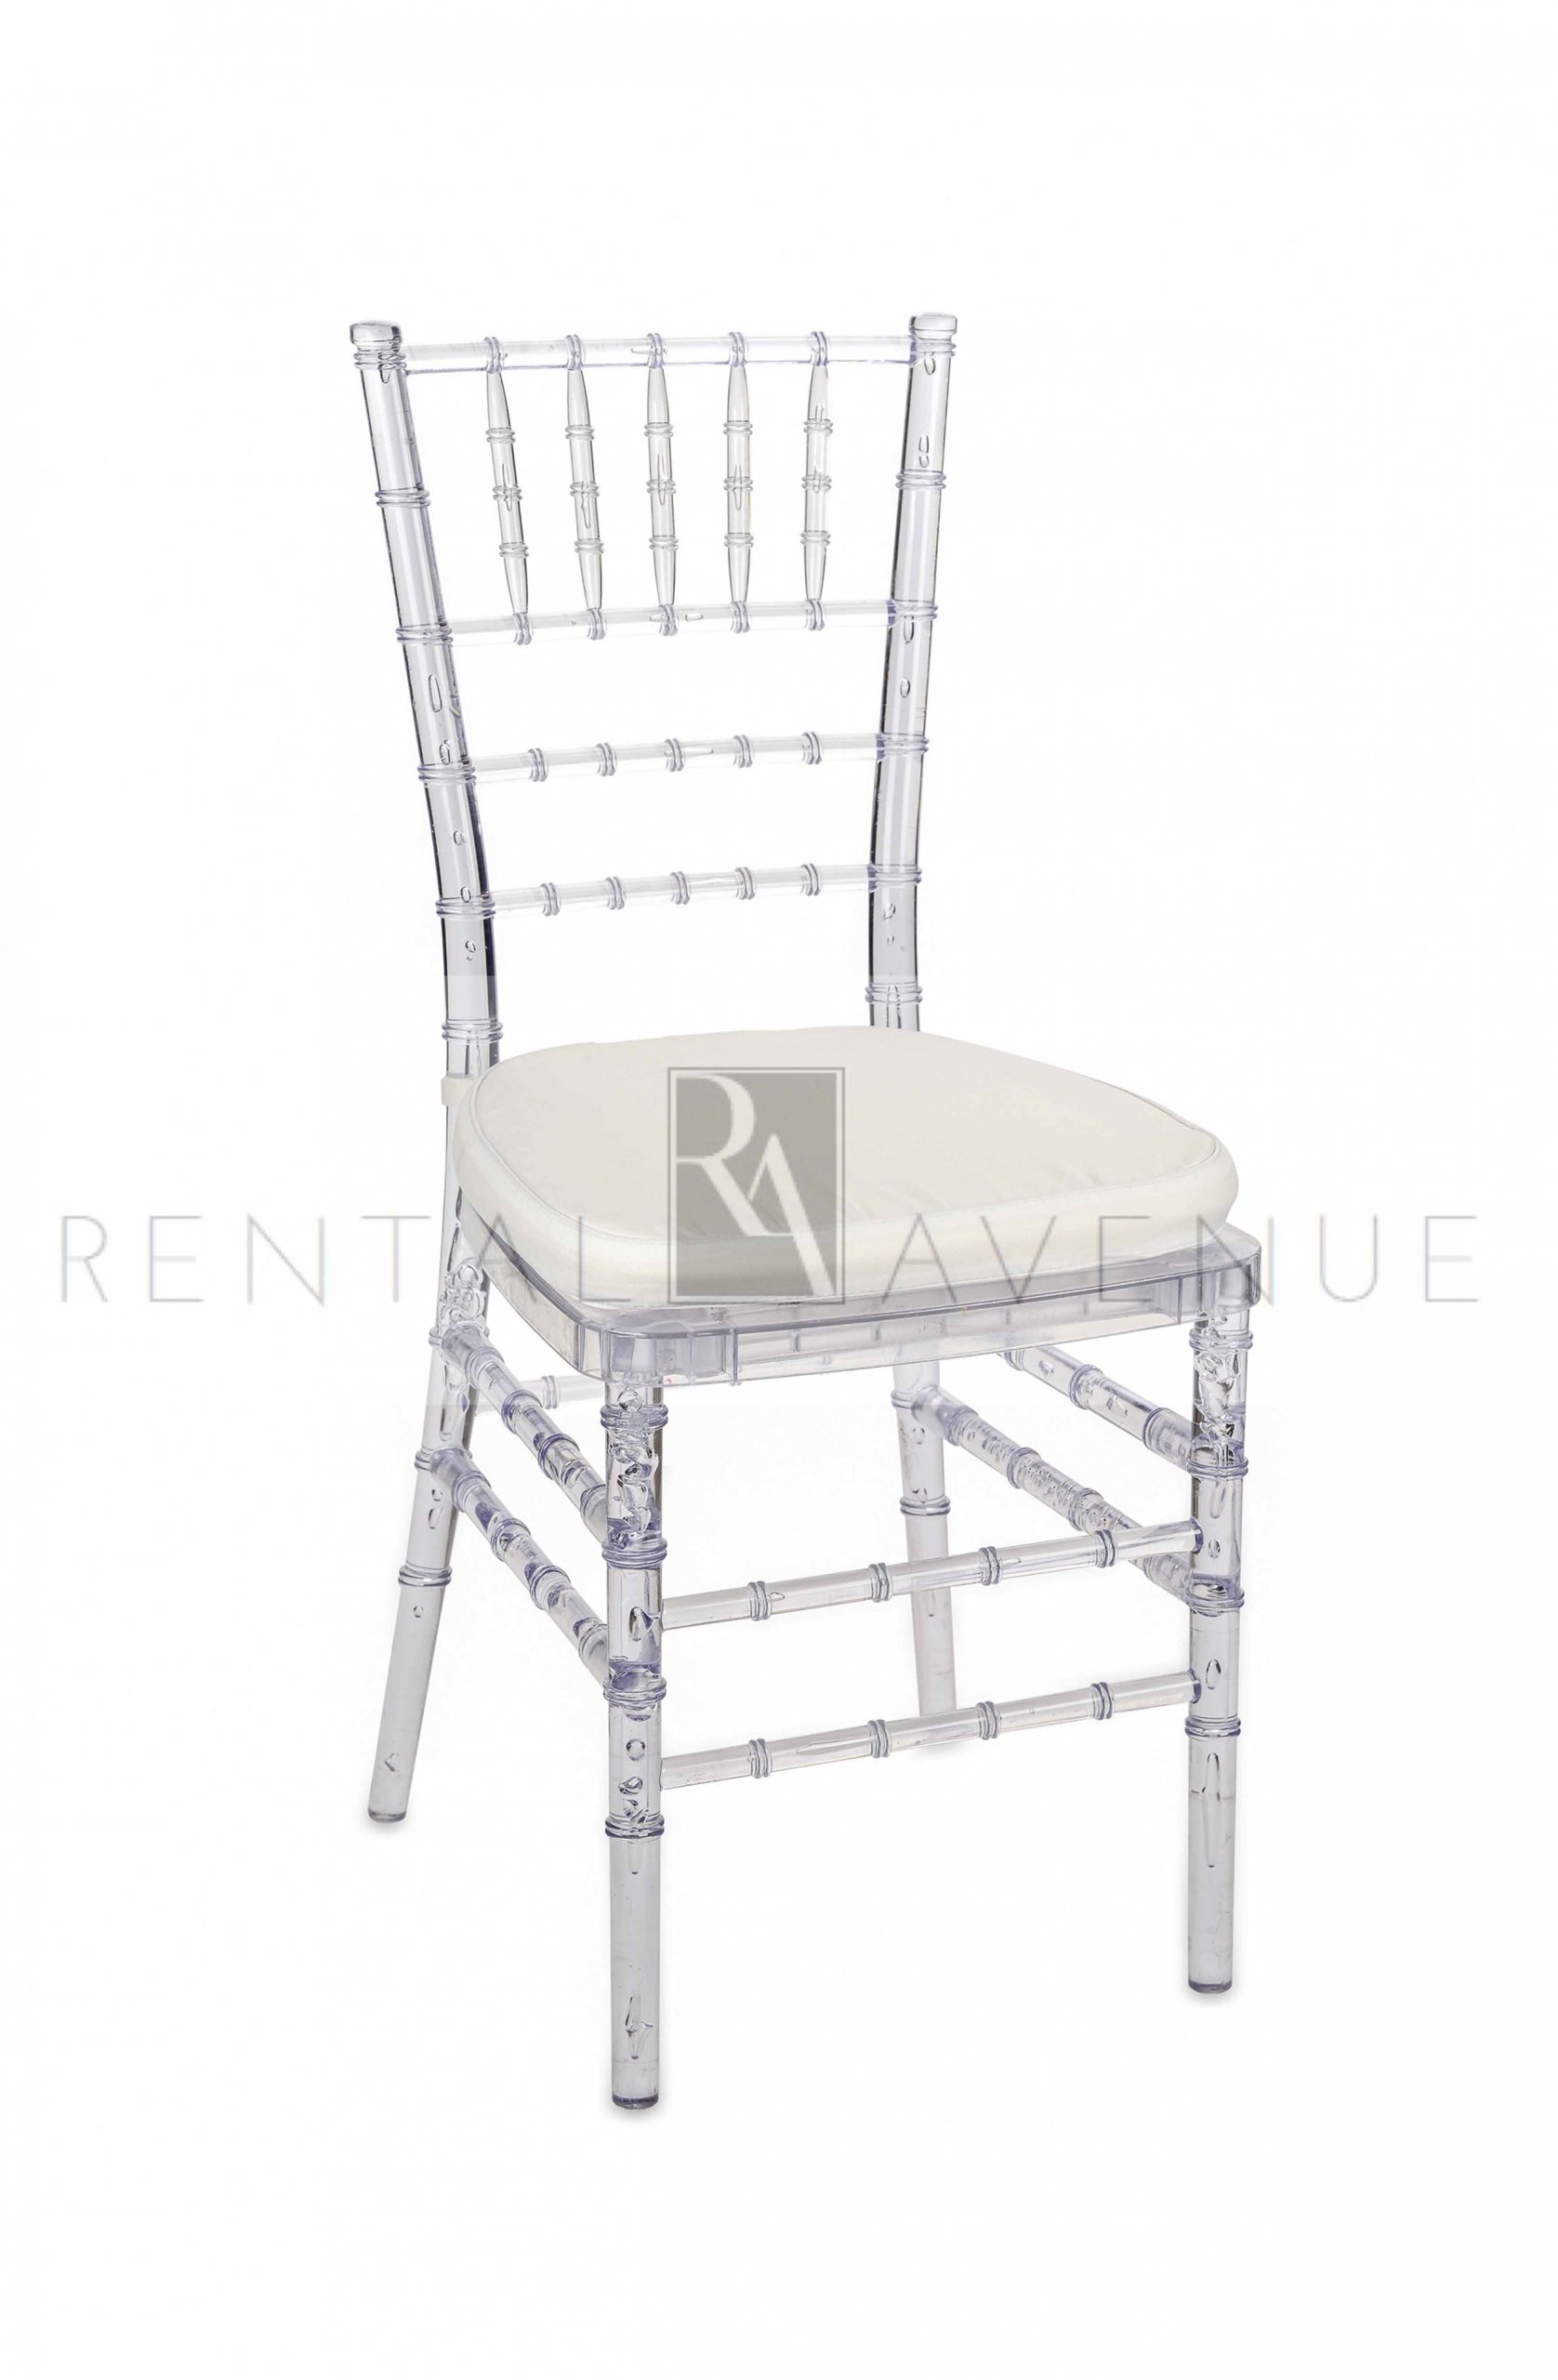 Chiavari Chair Clear – The Rental Avenue